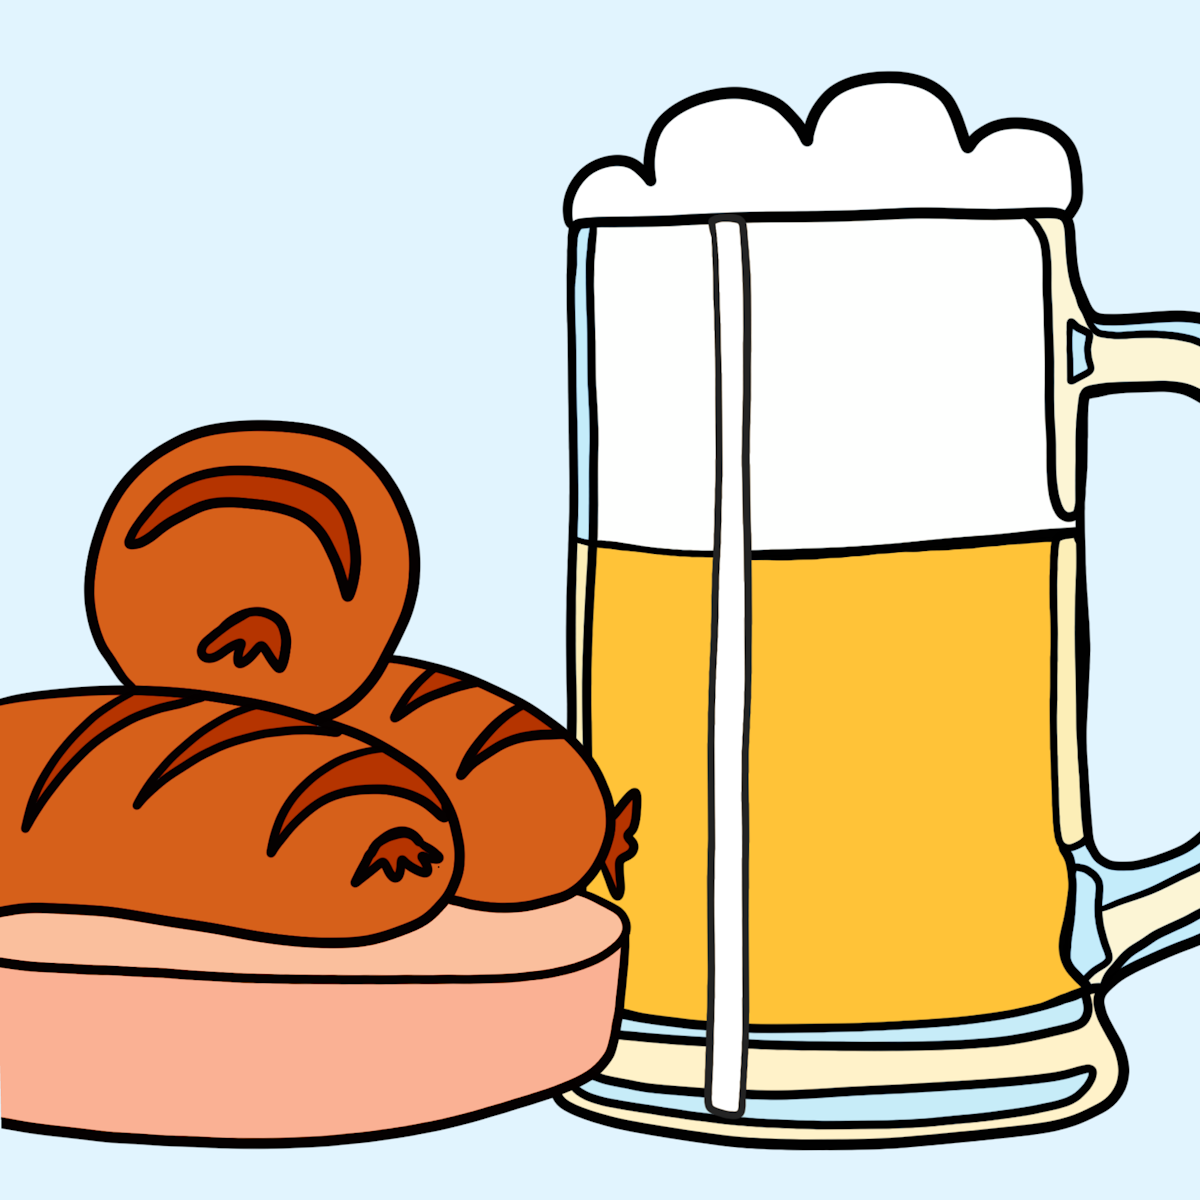 German beer & sausages illustration